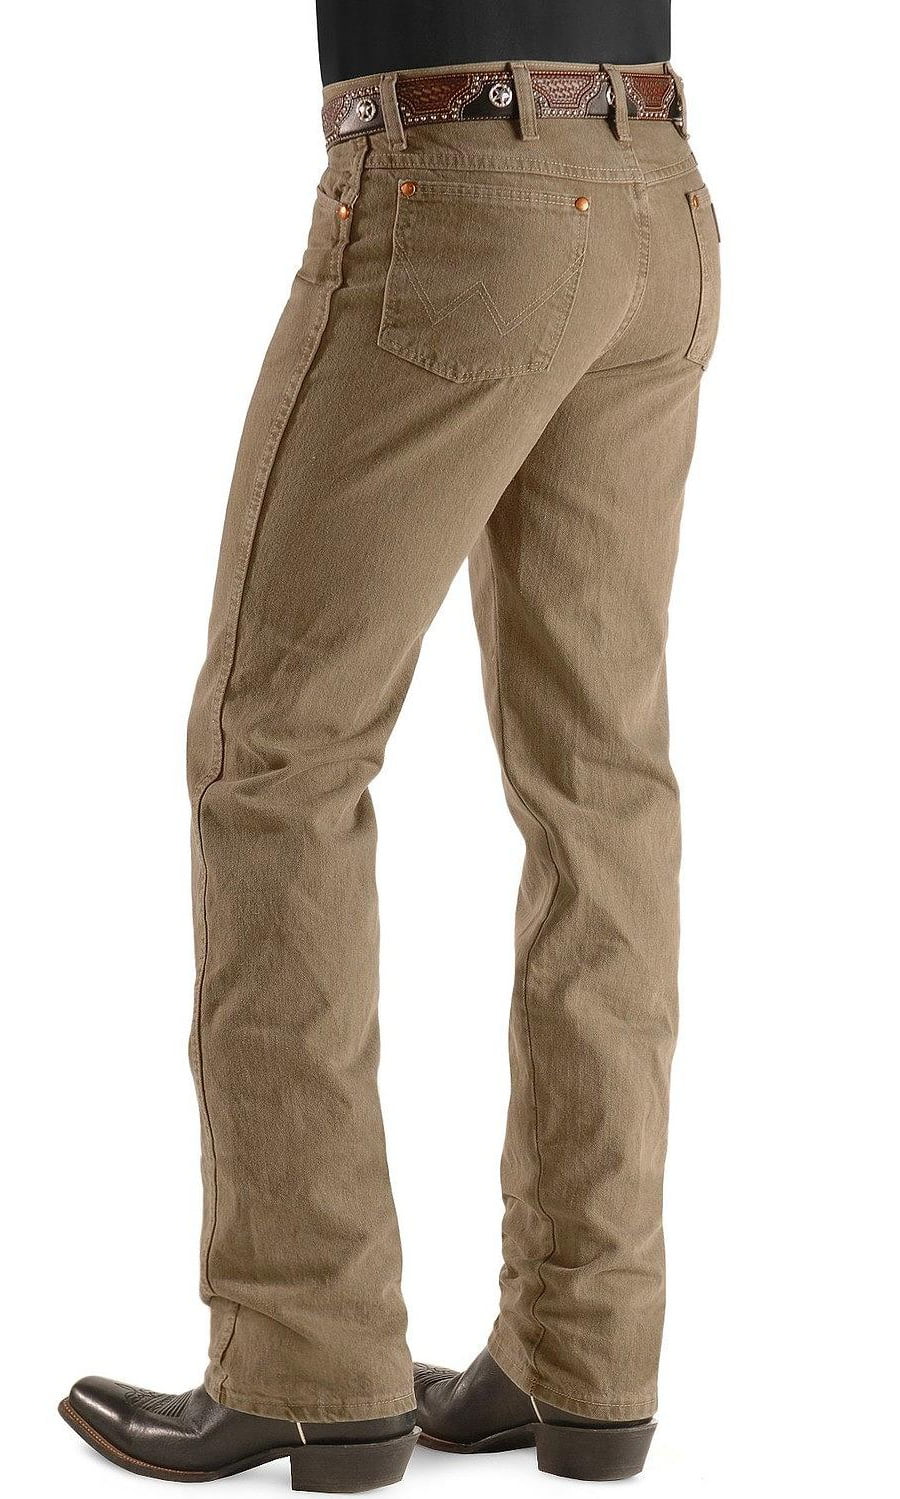 Wrangler - Wrangler Men's Jeans 936 Slim Fit Prewashed Colors ...